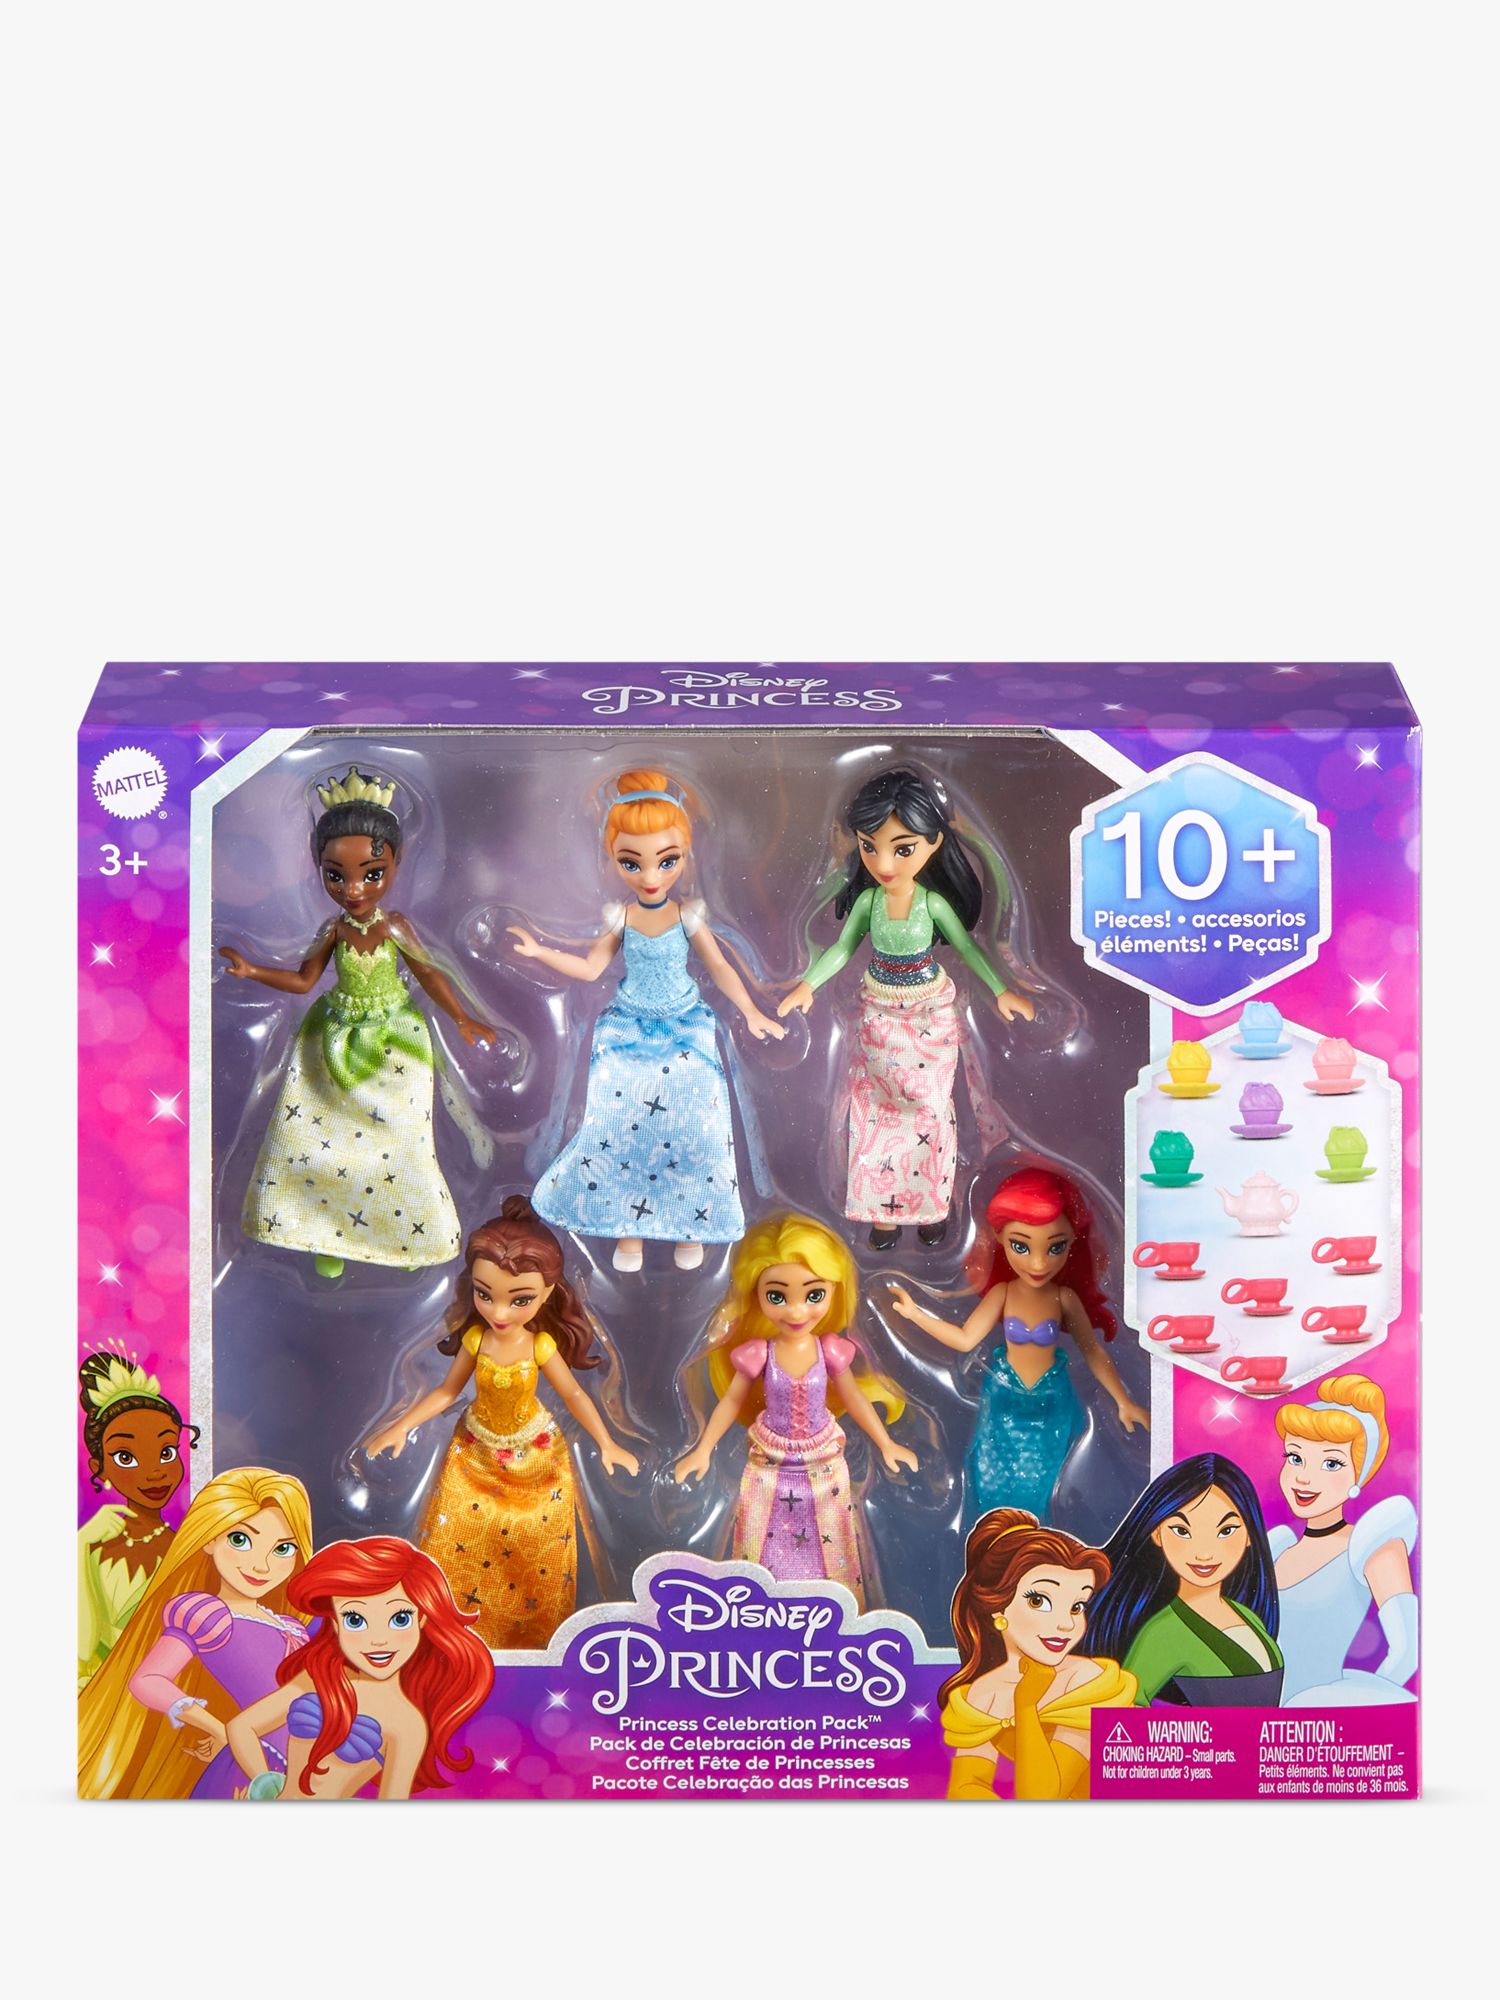 Disney Princess Ariel Shemale Porn Big - Disney Princess Celebration Doll Set